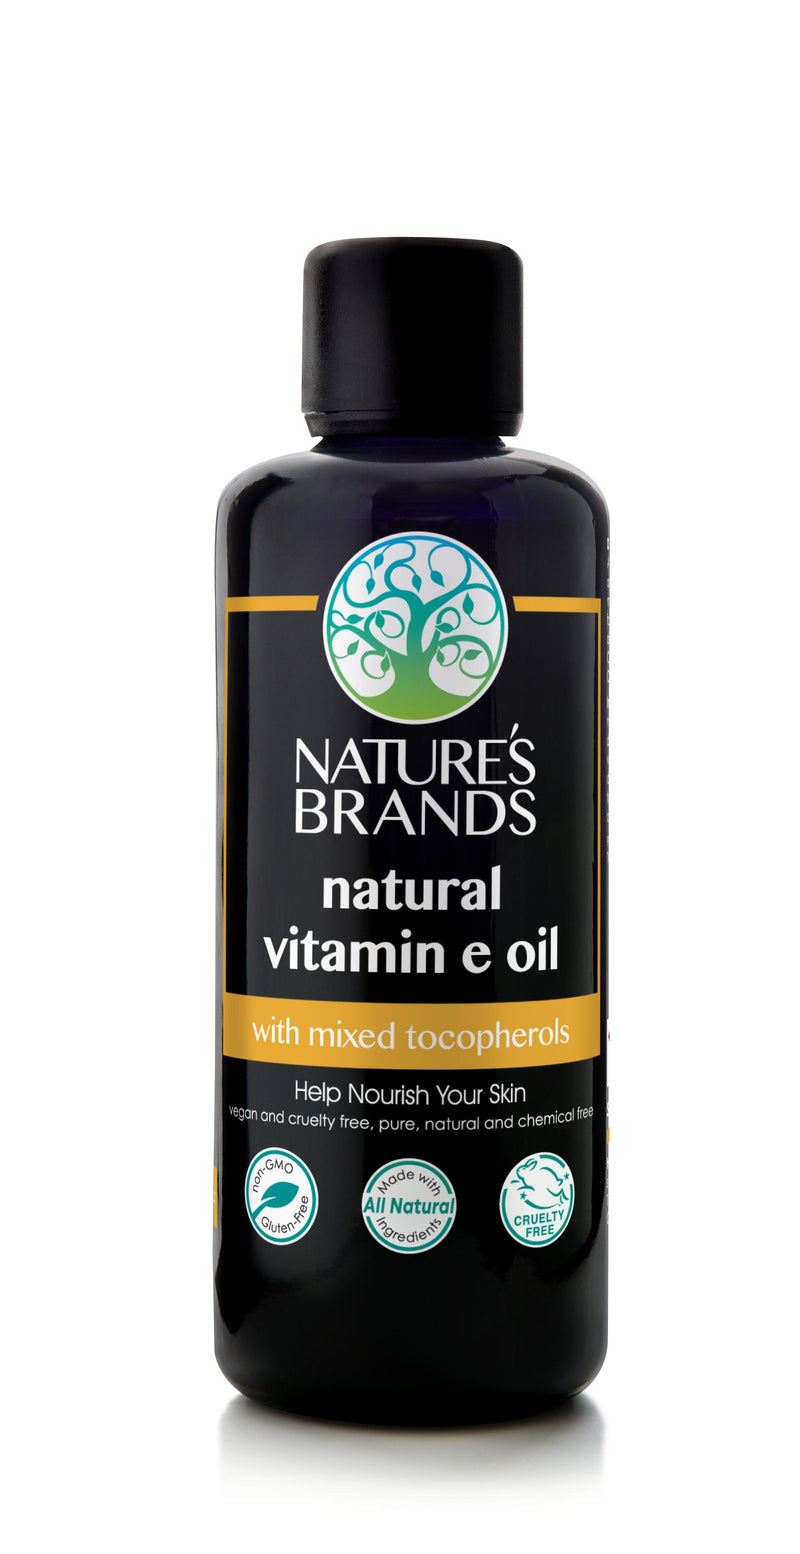 Herbal Choice Mari Natural Vitamin E Oil - Herbal Choice Mari Natural Vitamin E Oil - Herbal Choice Mari Natural Vitamin E Oil